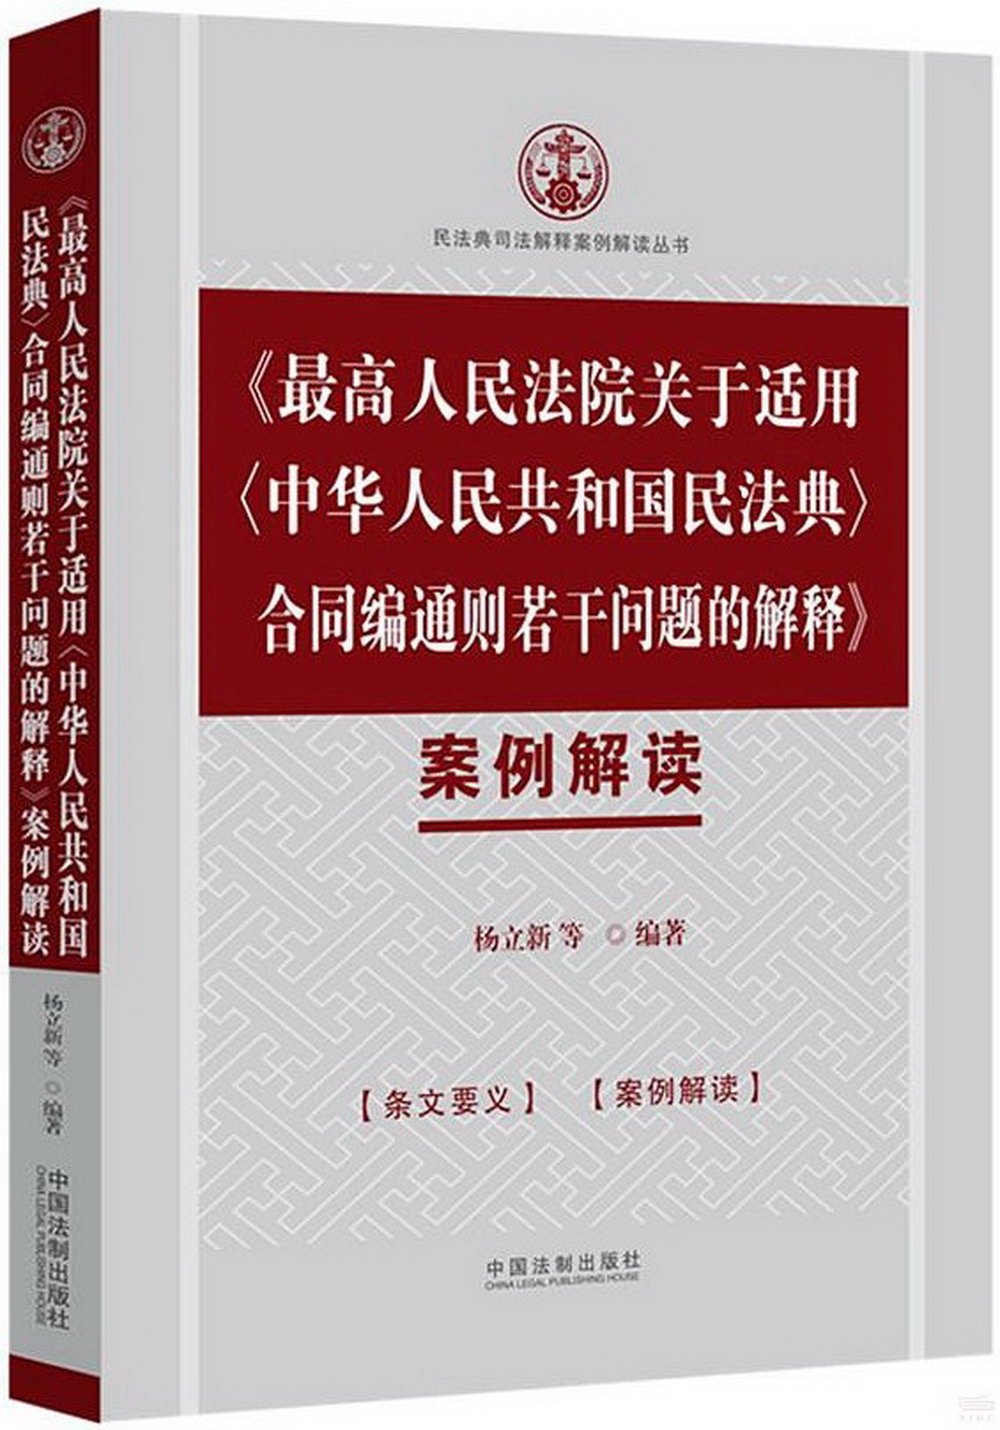 《最高人民法院關於適用〈中華人民共和國民法典〉合同編通則若干問題的解釋》案例解讀